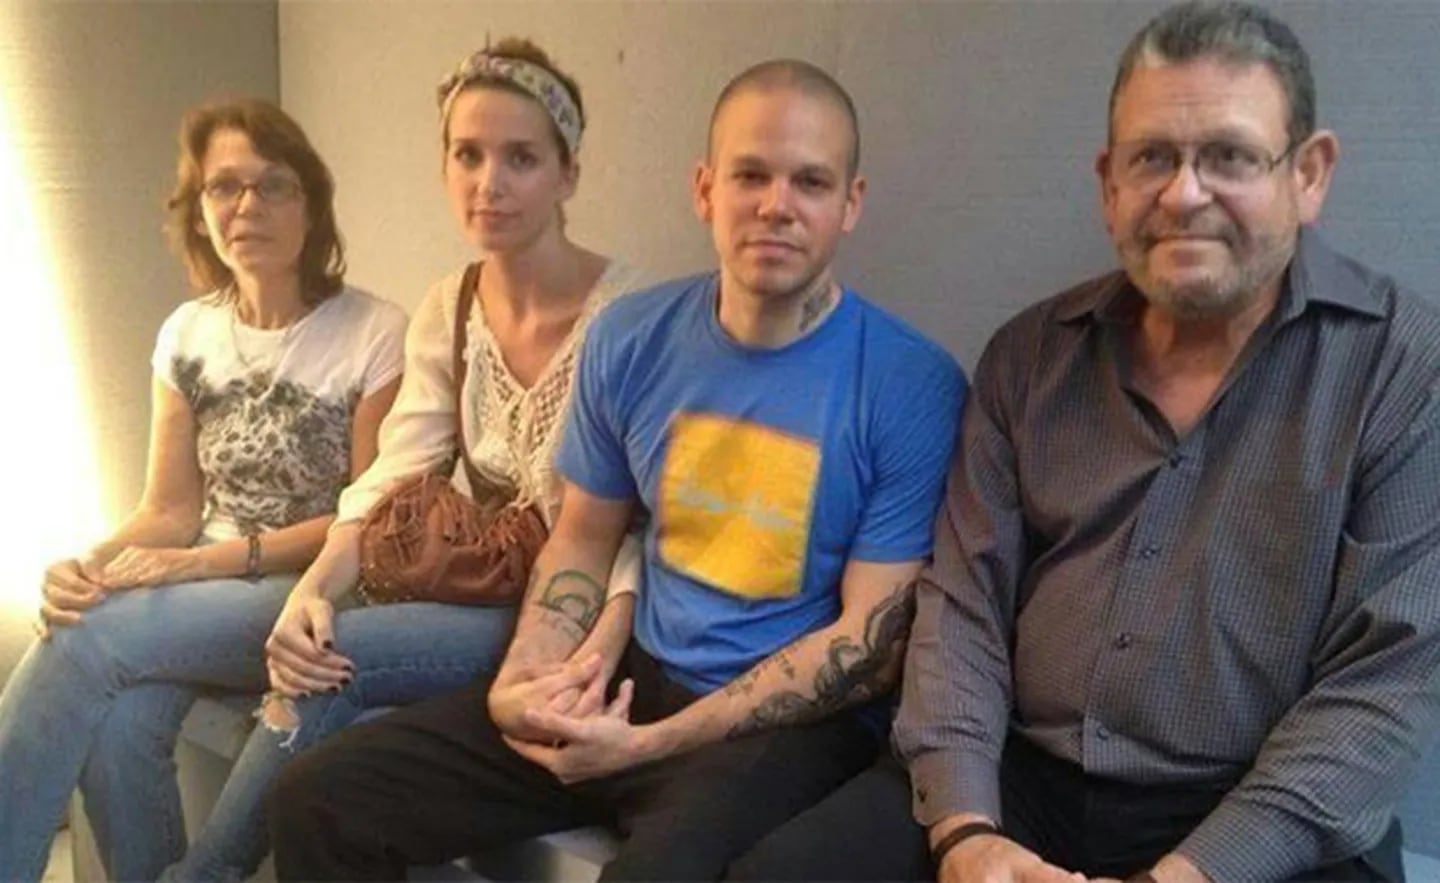 René Pérez de Calle 13 se encarceló junto a Soledad Fandiño como forma de protesta. (Foto: Twitter)